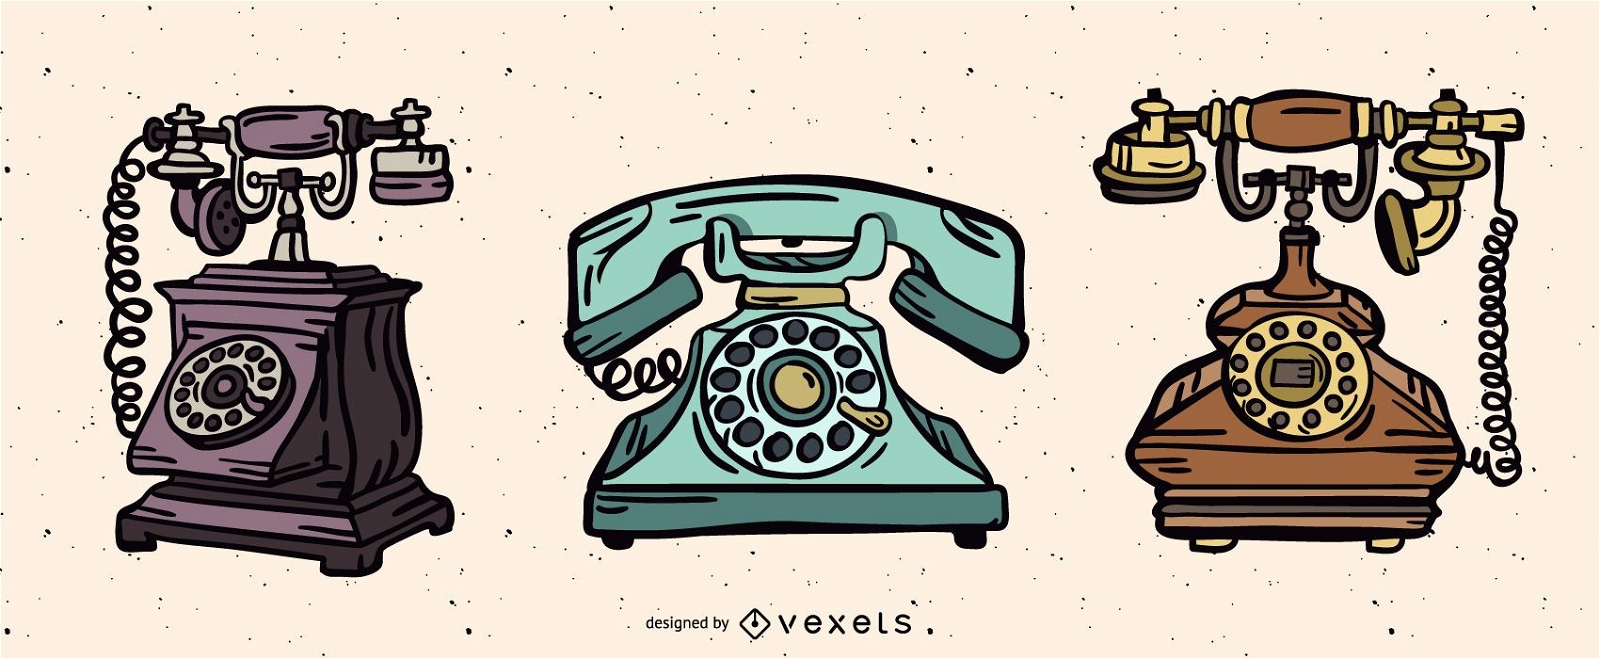 Vintage Telephone Illustration Pack Vector Download